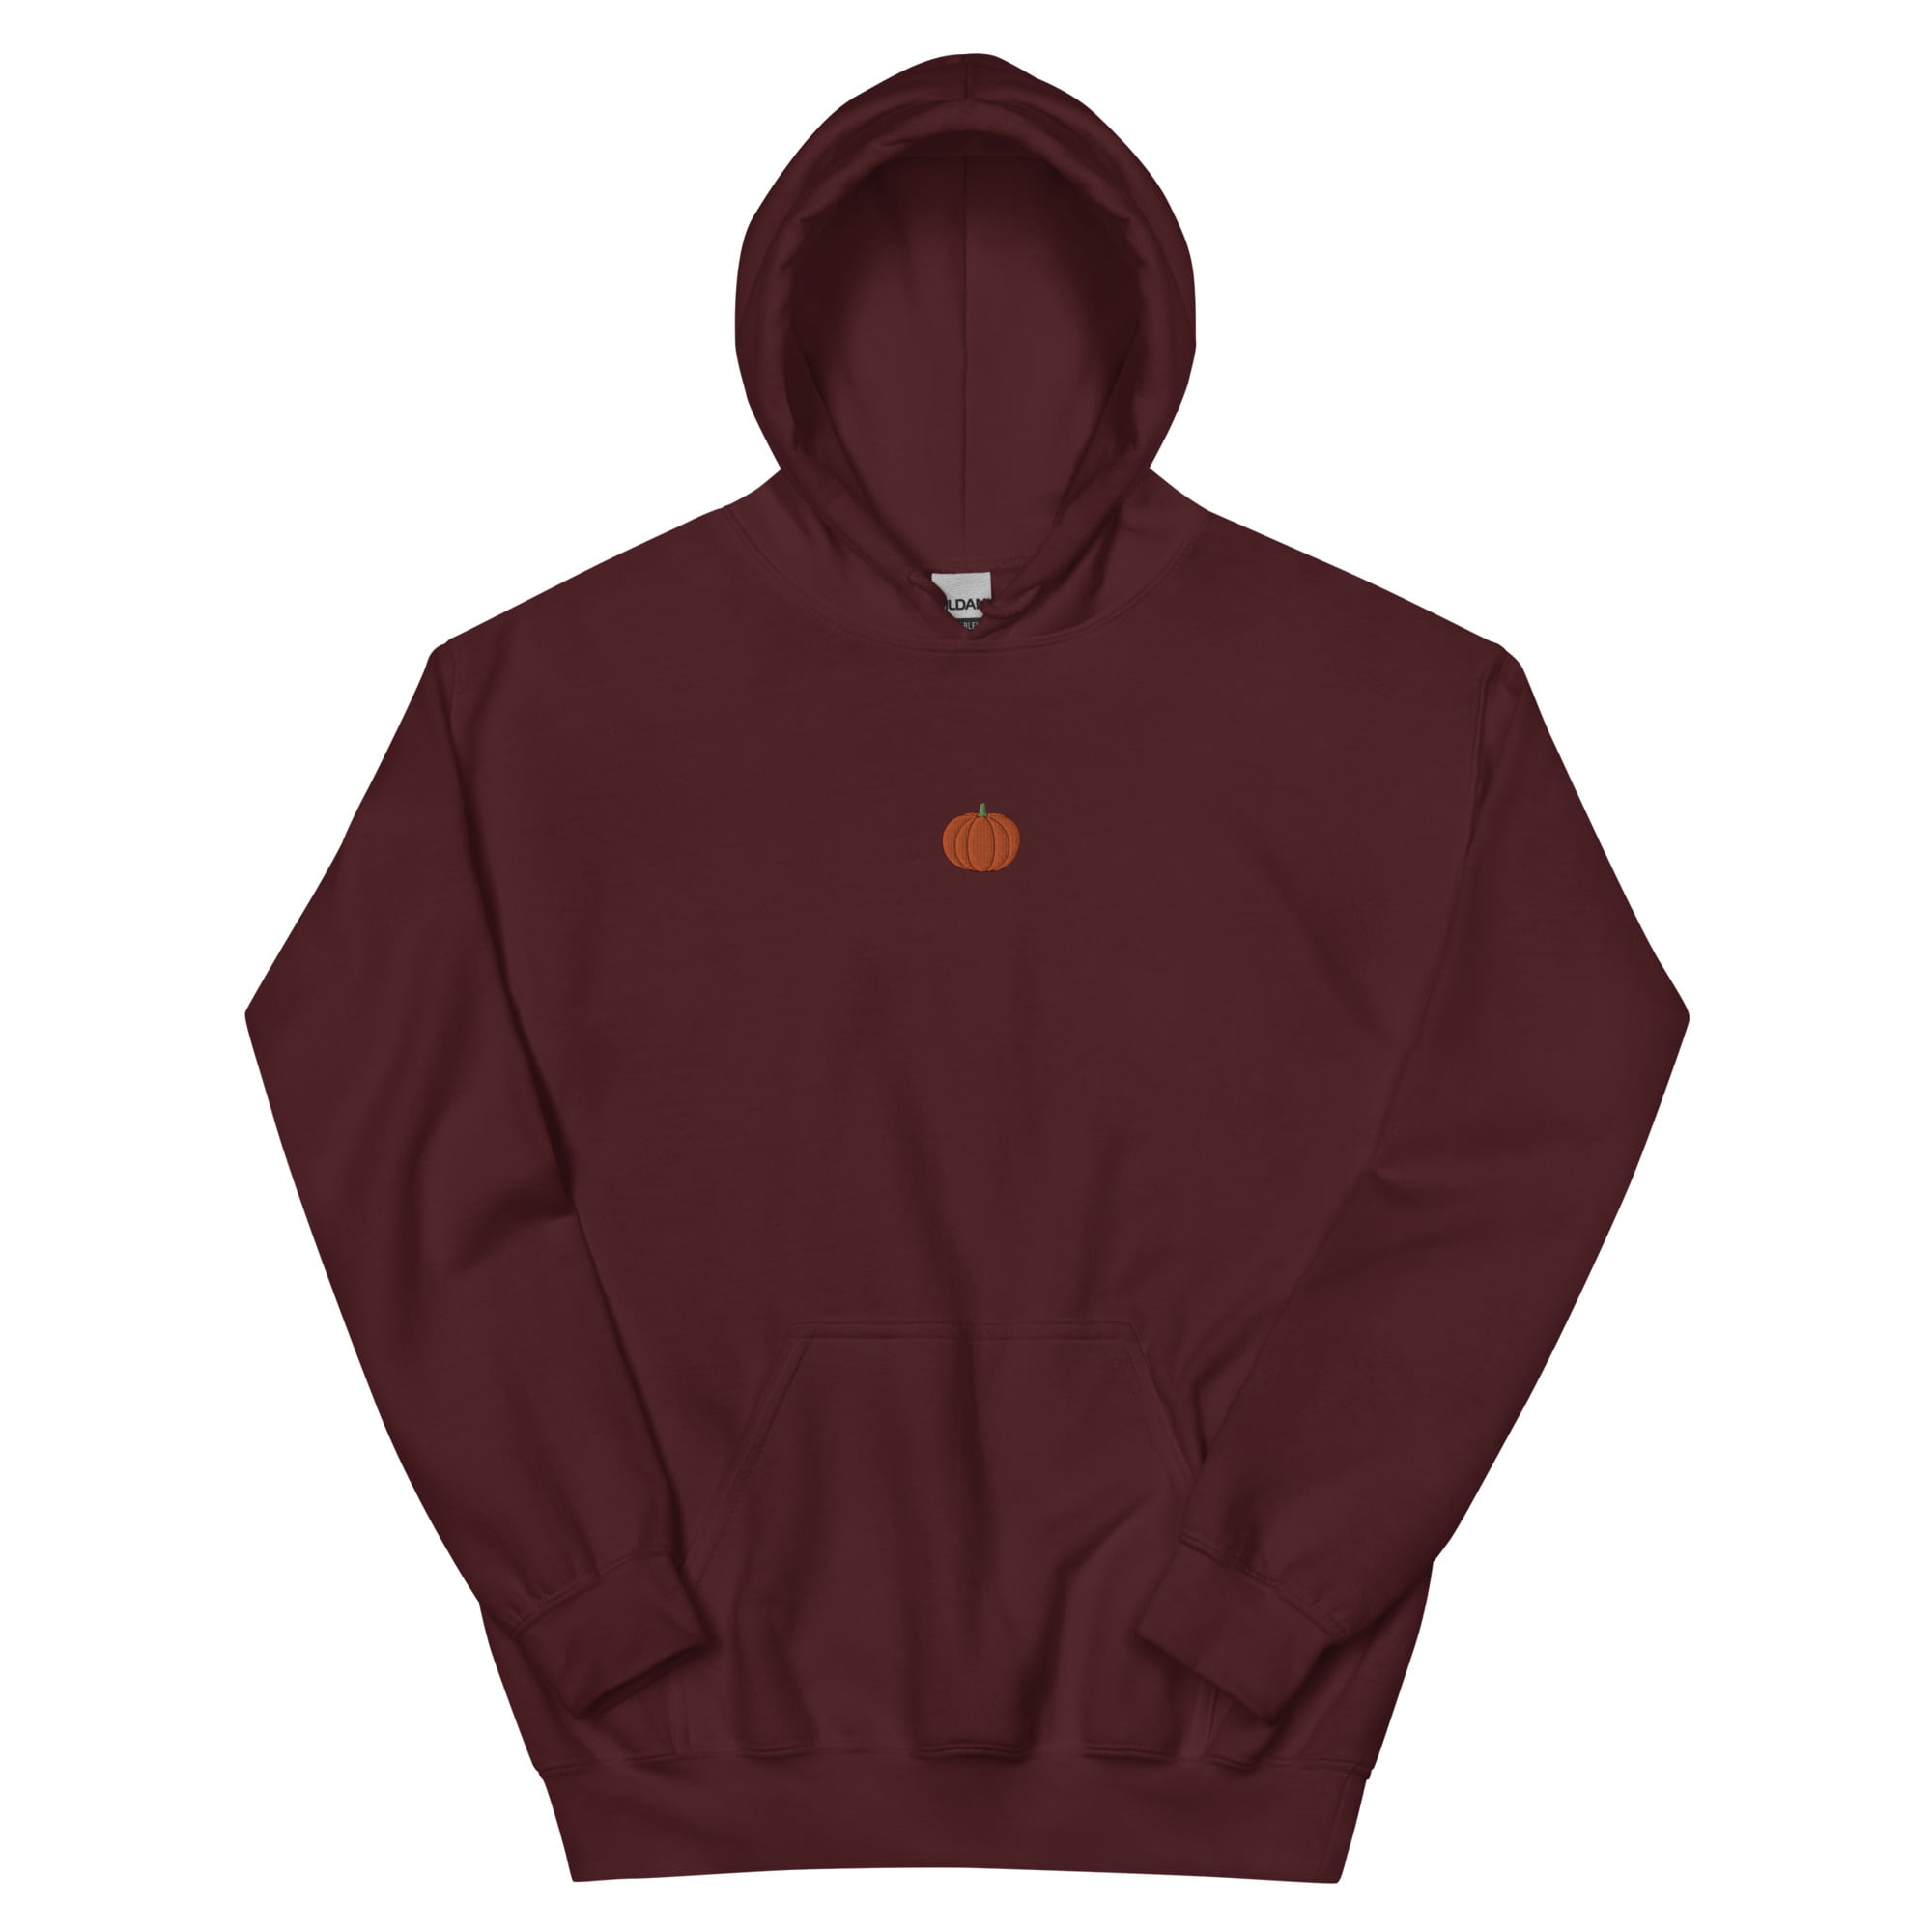 unisex heavy blend hoodie maroon front 64fb462b6cacb 1.jpg